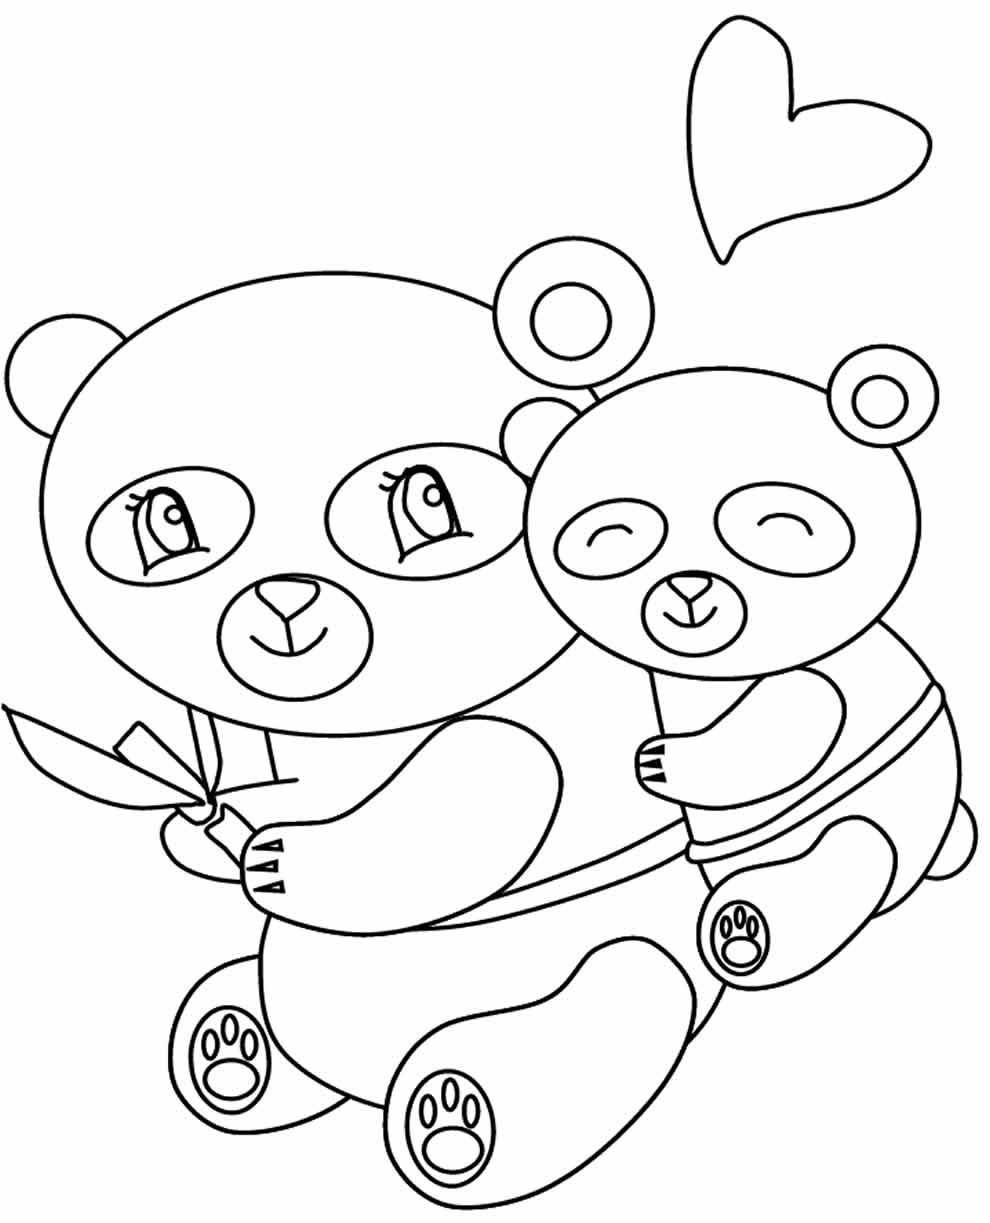 50+ Desenhos para colorir de Panda - Pop Lembrancinhas